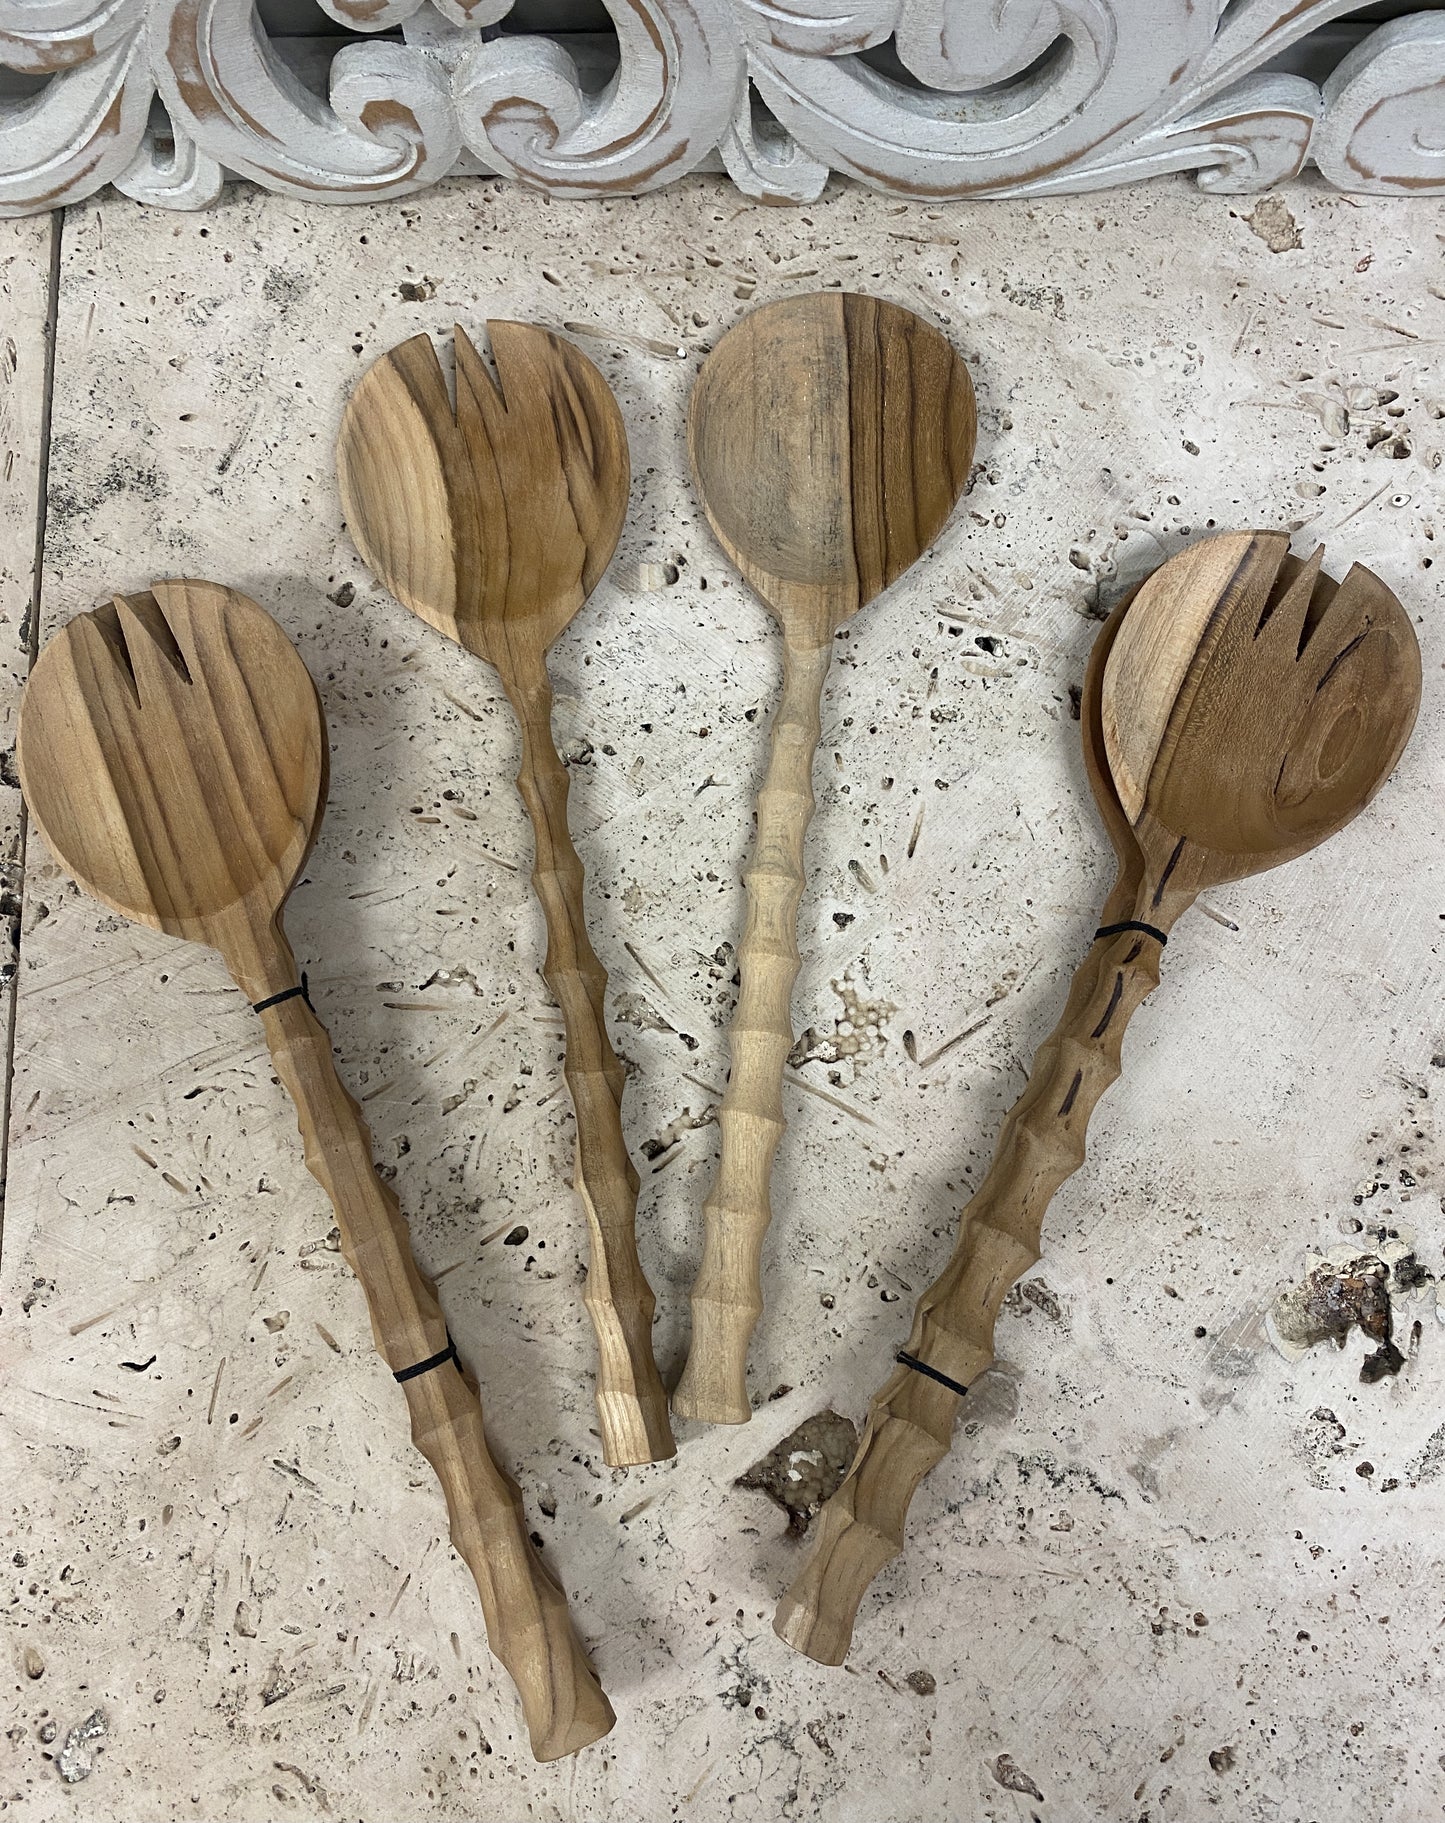 Hand Carved Teak Wood Salad Serving Spoon & Fork sets 12"